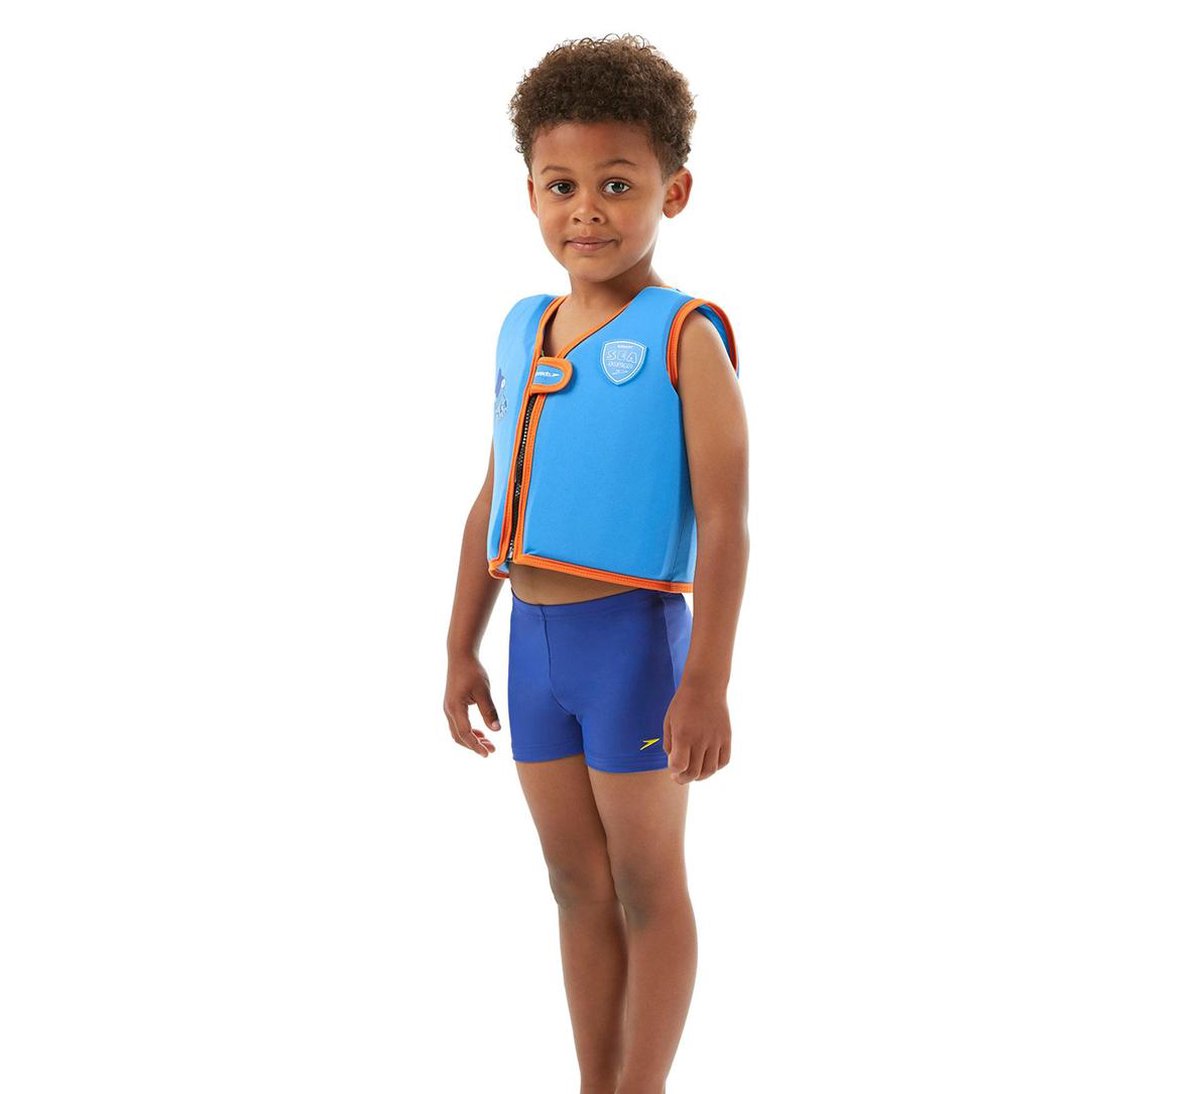 Vermeend Ministerie joggen Speedo Sea Squad Drijf Vest (1-2 jaar) - Blauw | bol.com